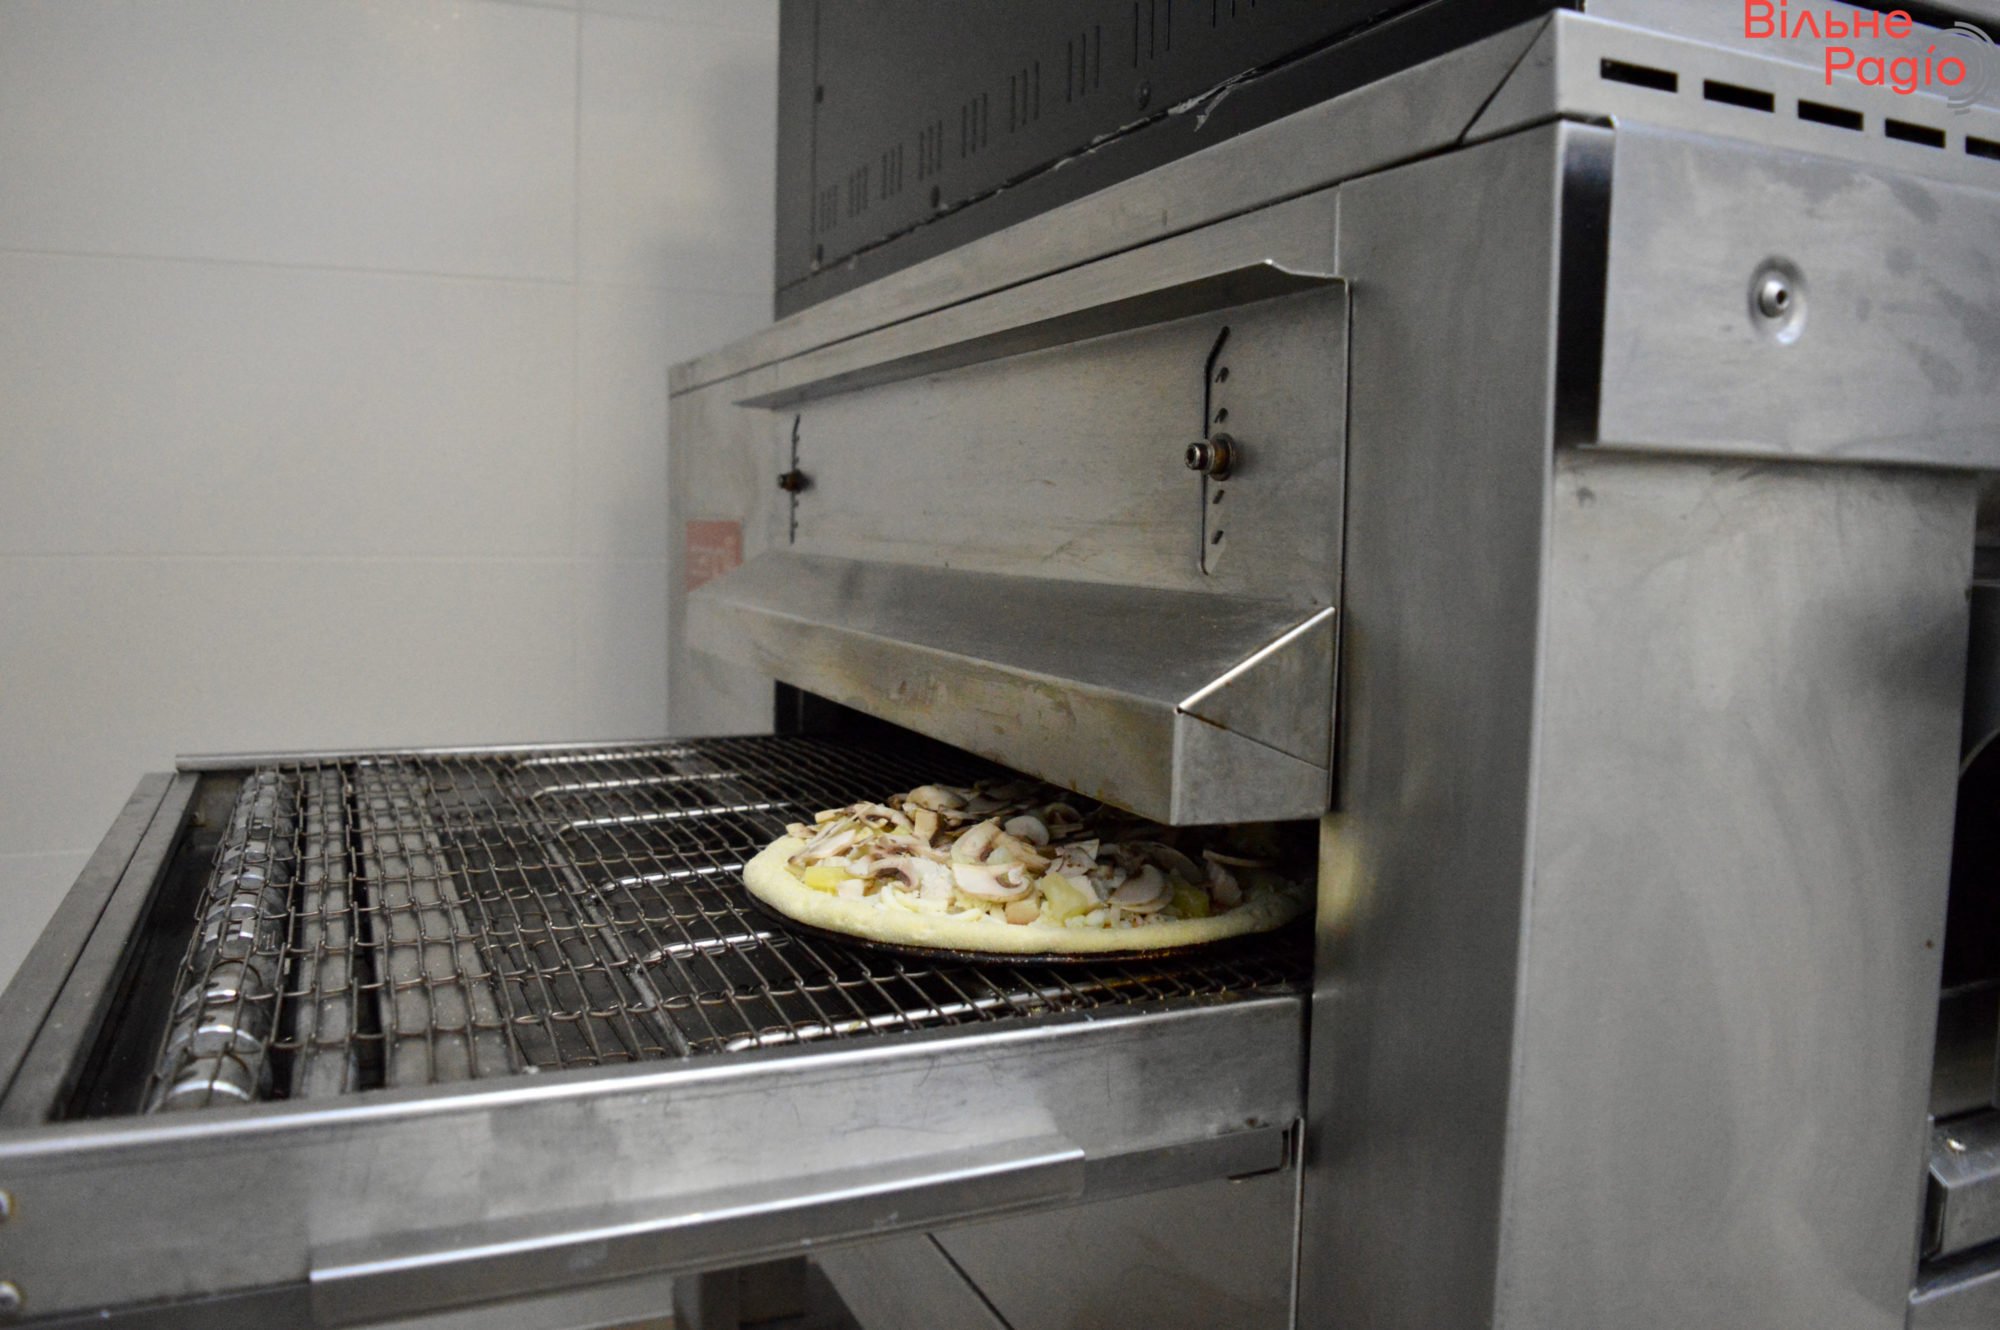 Восточная пицца в Киеве: как работает сеть, которая пекла по 1500 благотворительных пицц на Донетчине, и выдерживает тесто по 3 дня (репортаж) 4